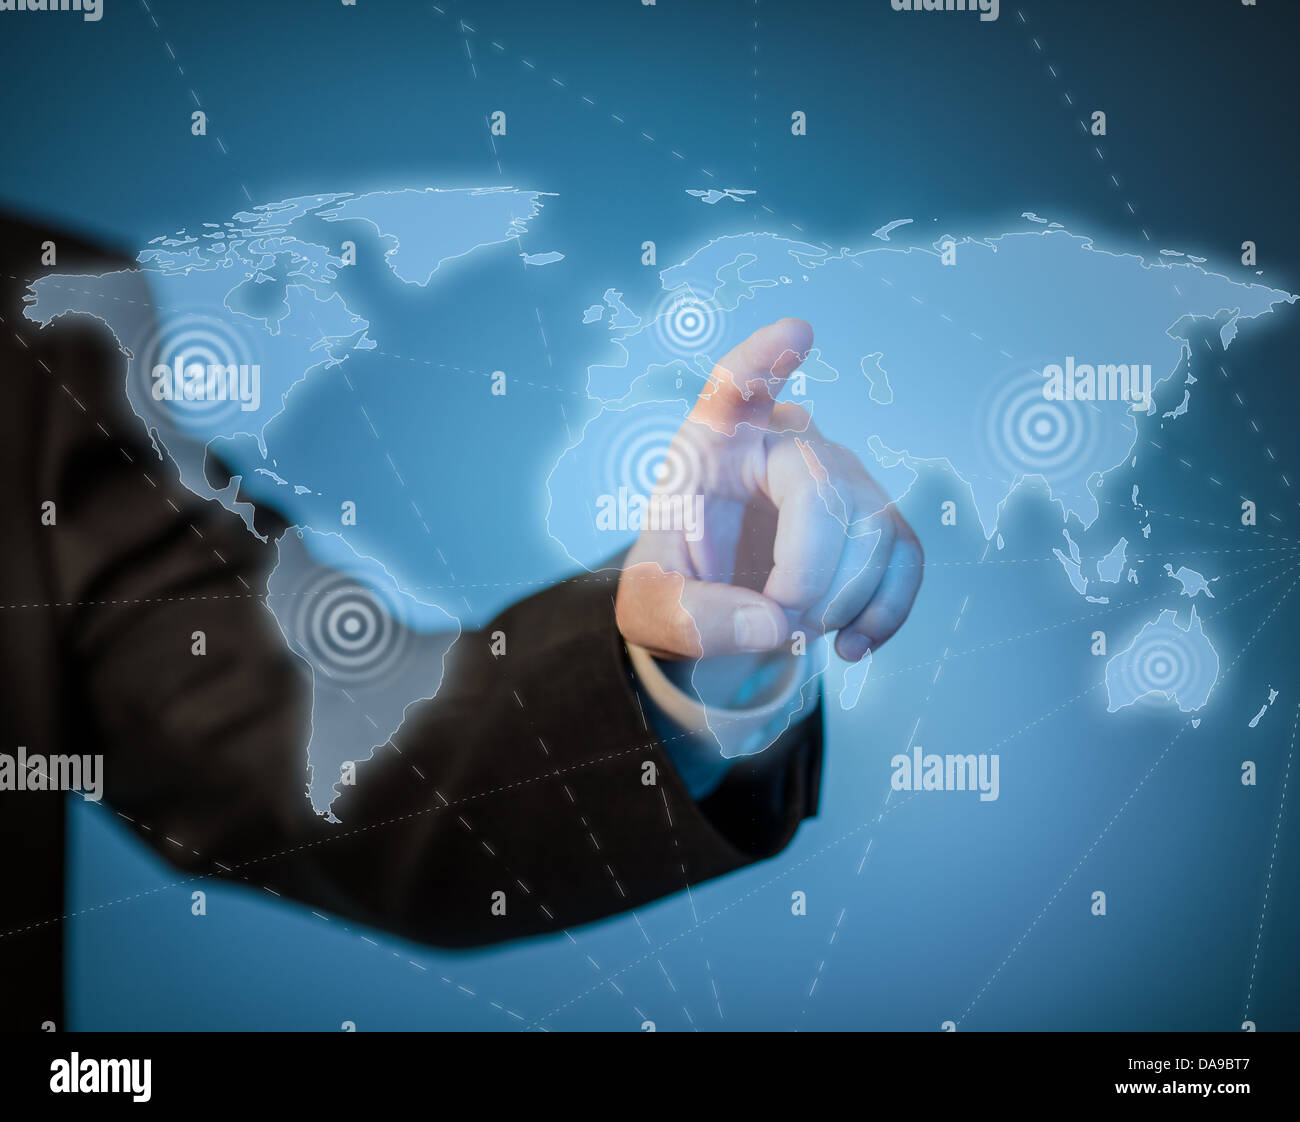 Man touching virtual world map by hand Stock Photo